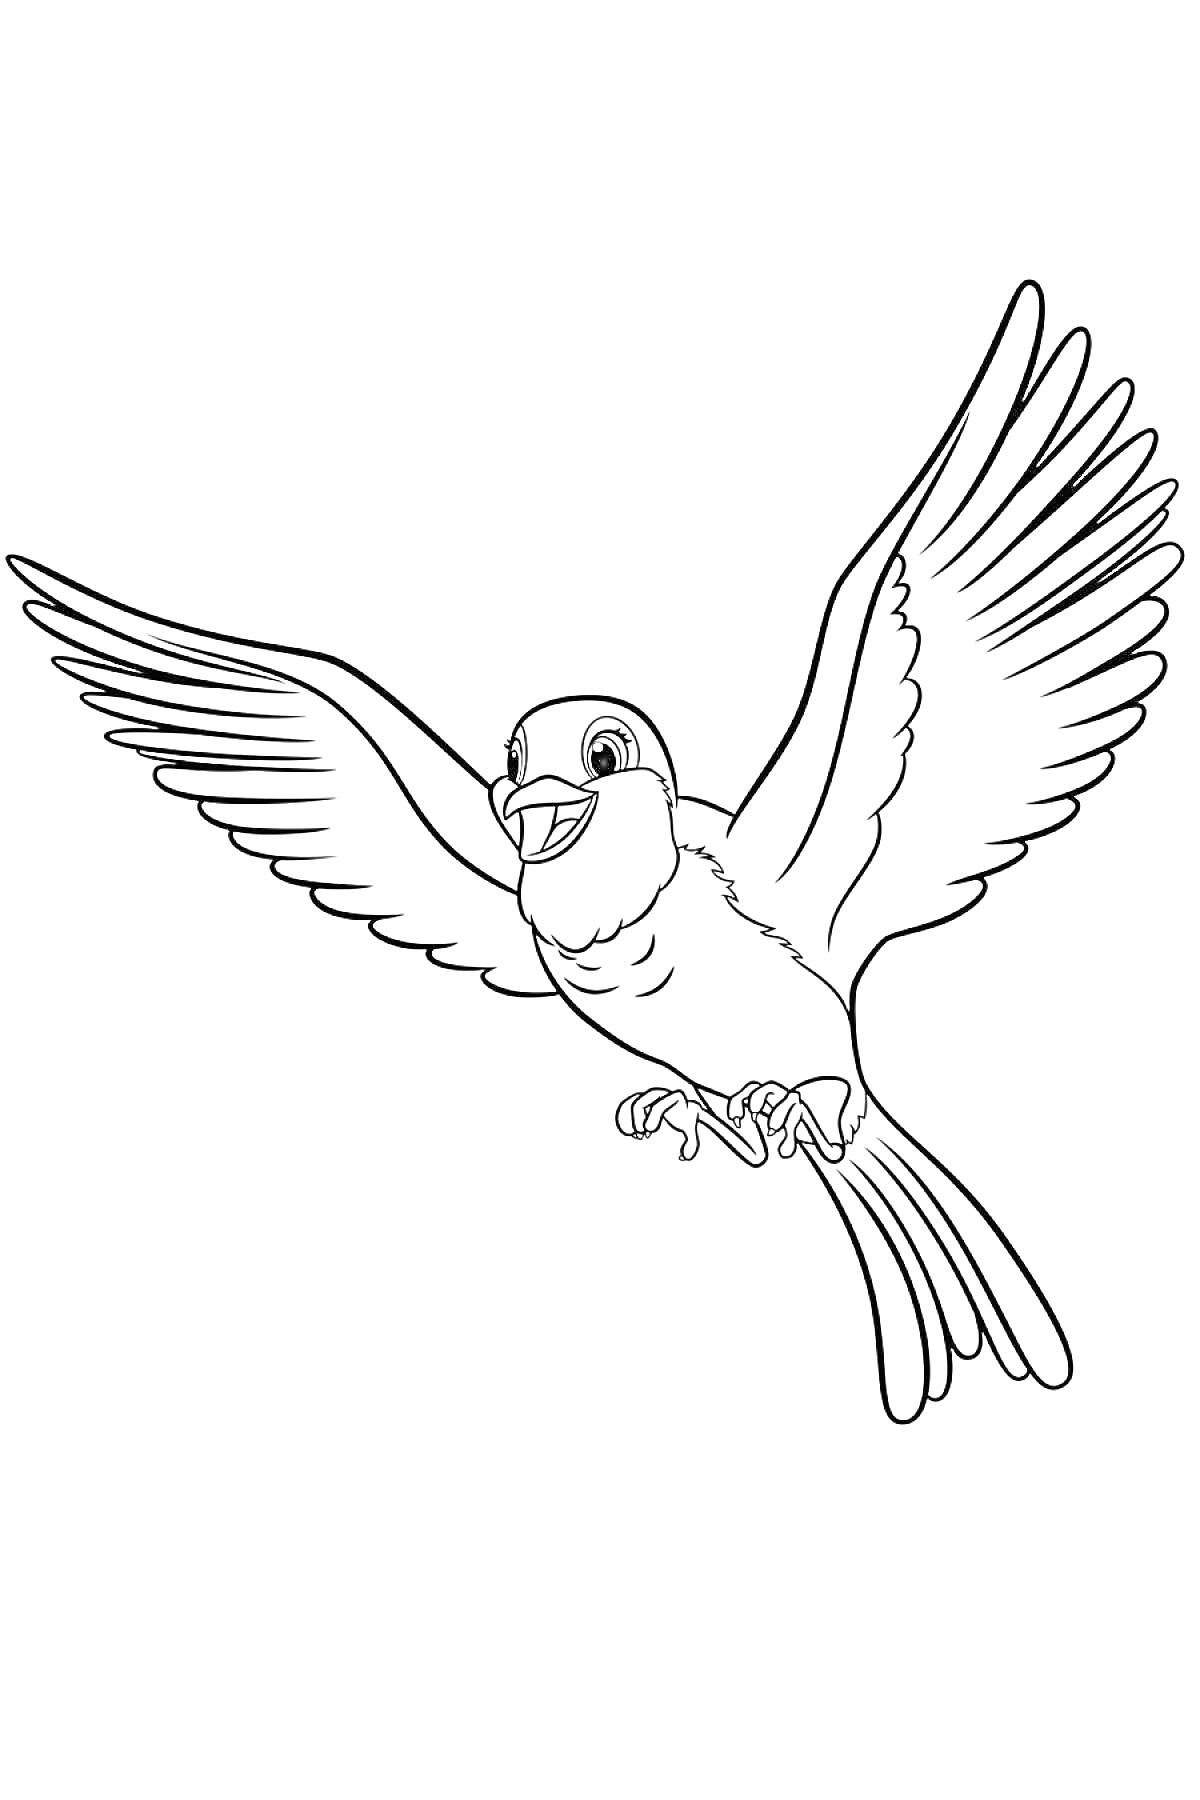 Раскраска Летящая птица из мультфильма 